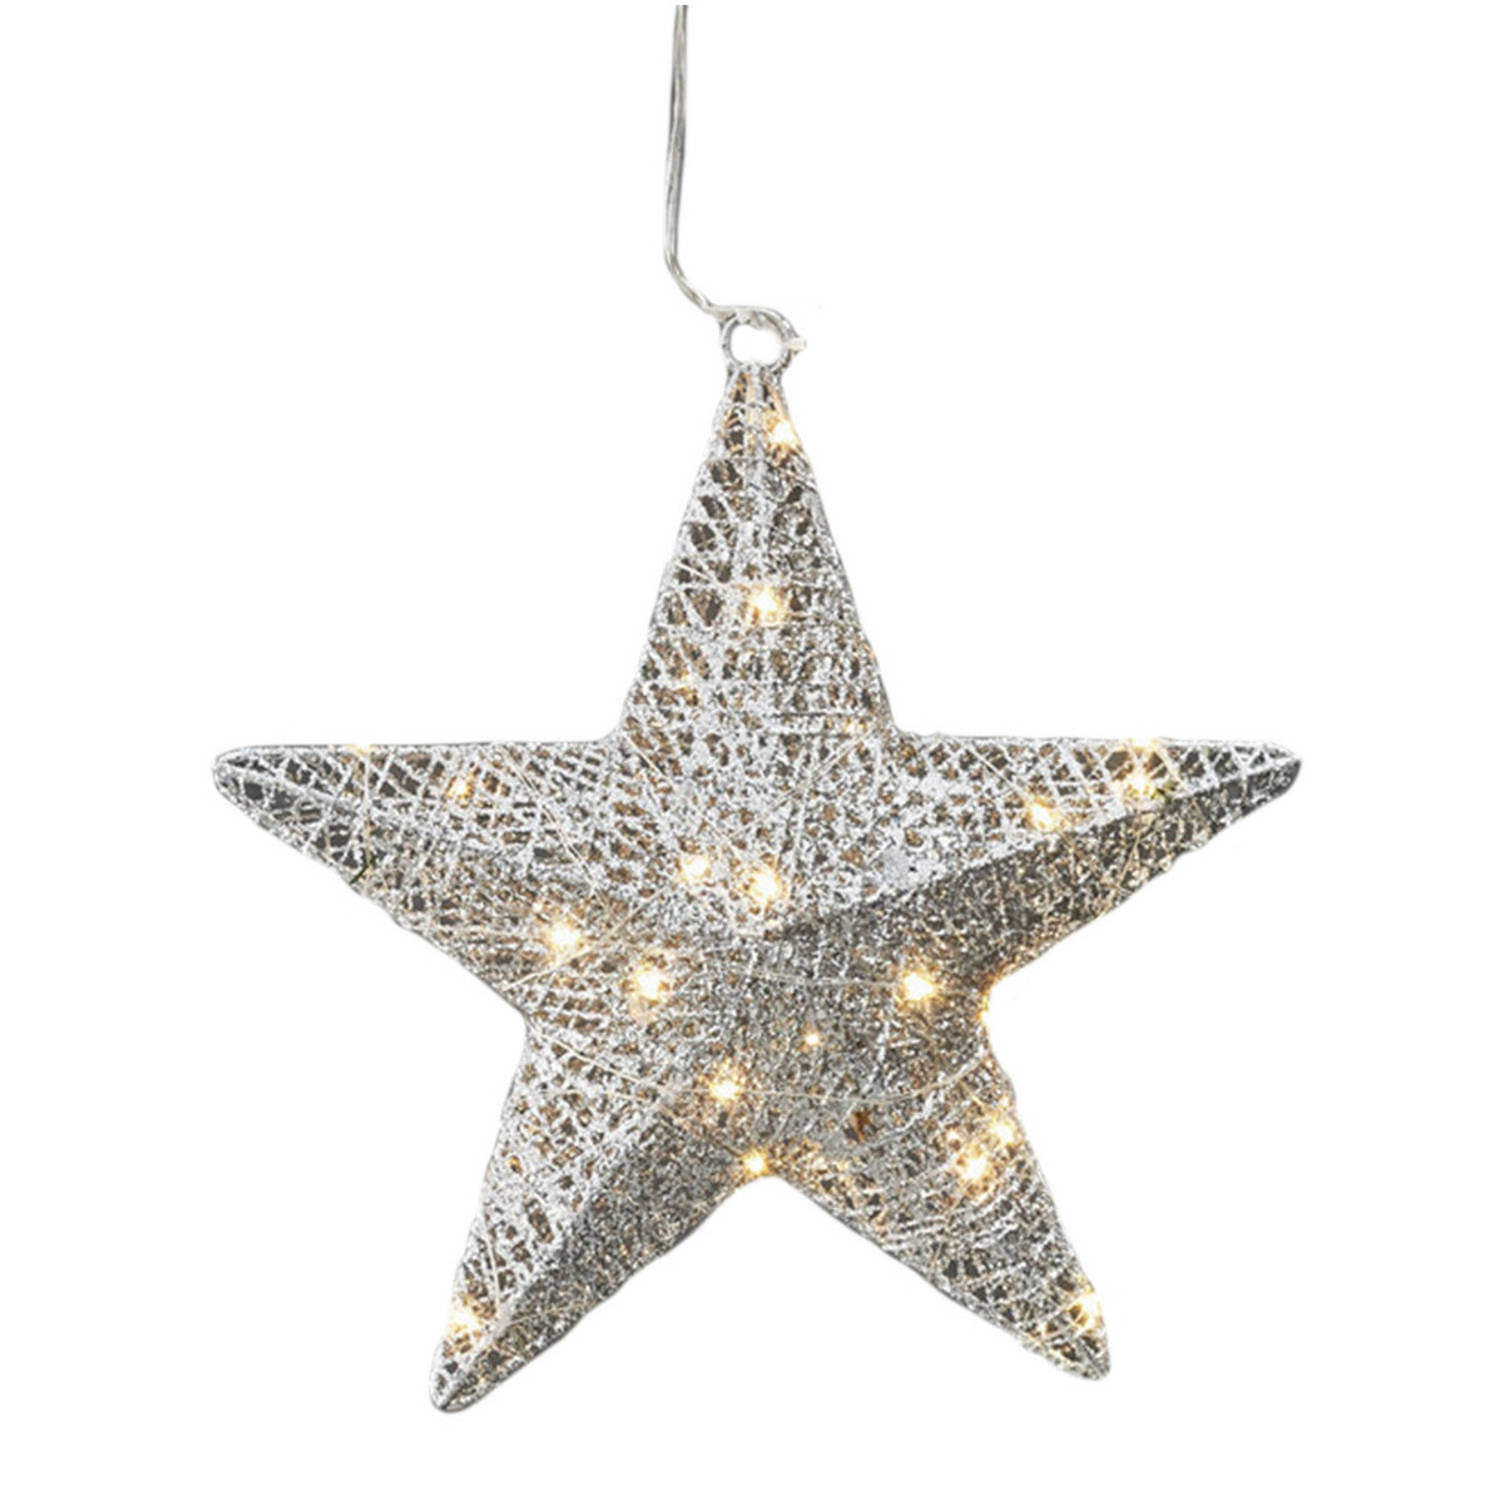 Zilveren ster met 30 warm witte LED lampjes 30 cm Kerststerren